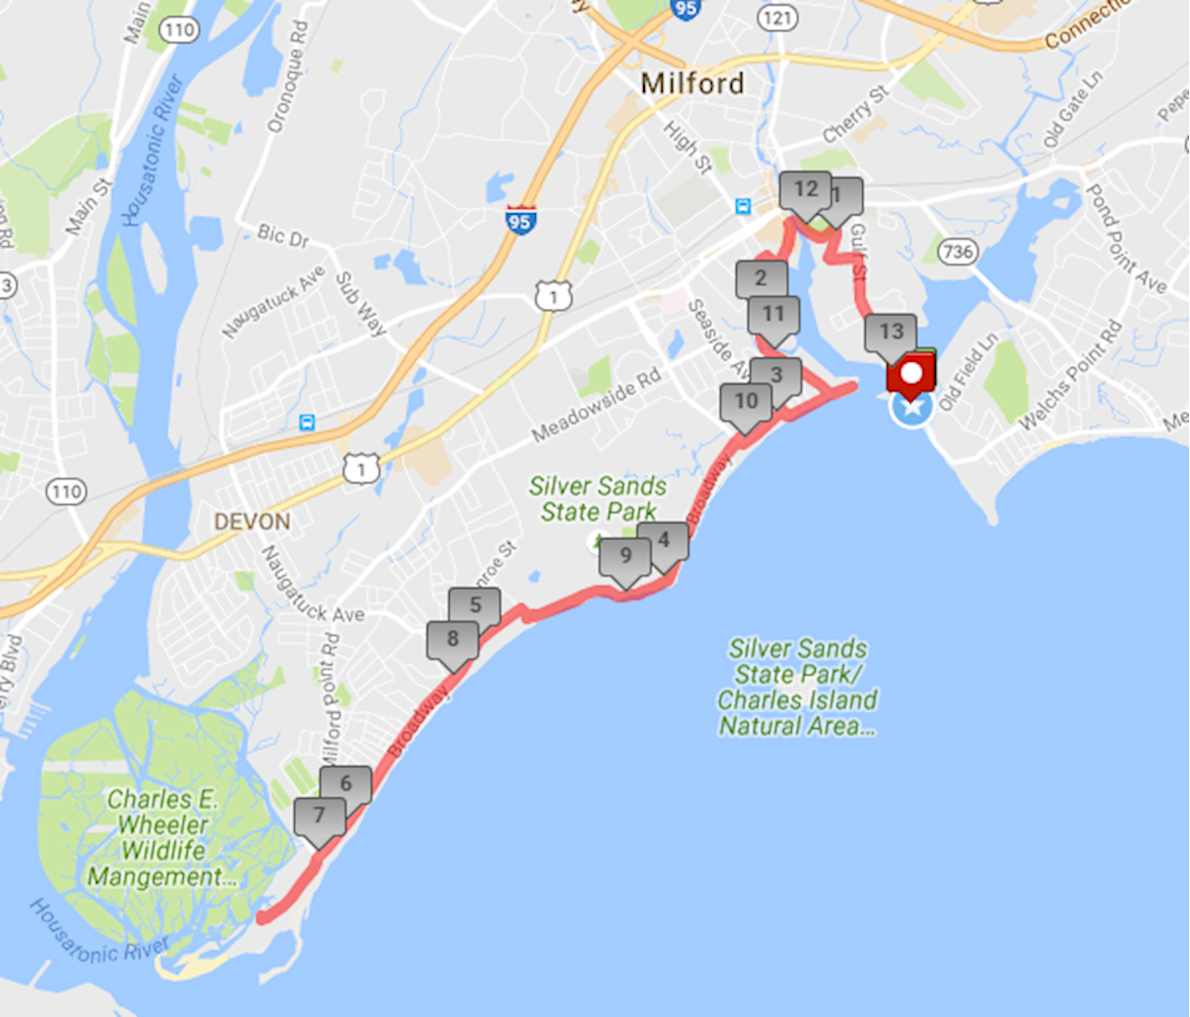 Gulf Beach Half Marathon, Sep 14 2019 World's Marathons